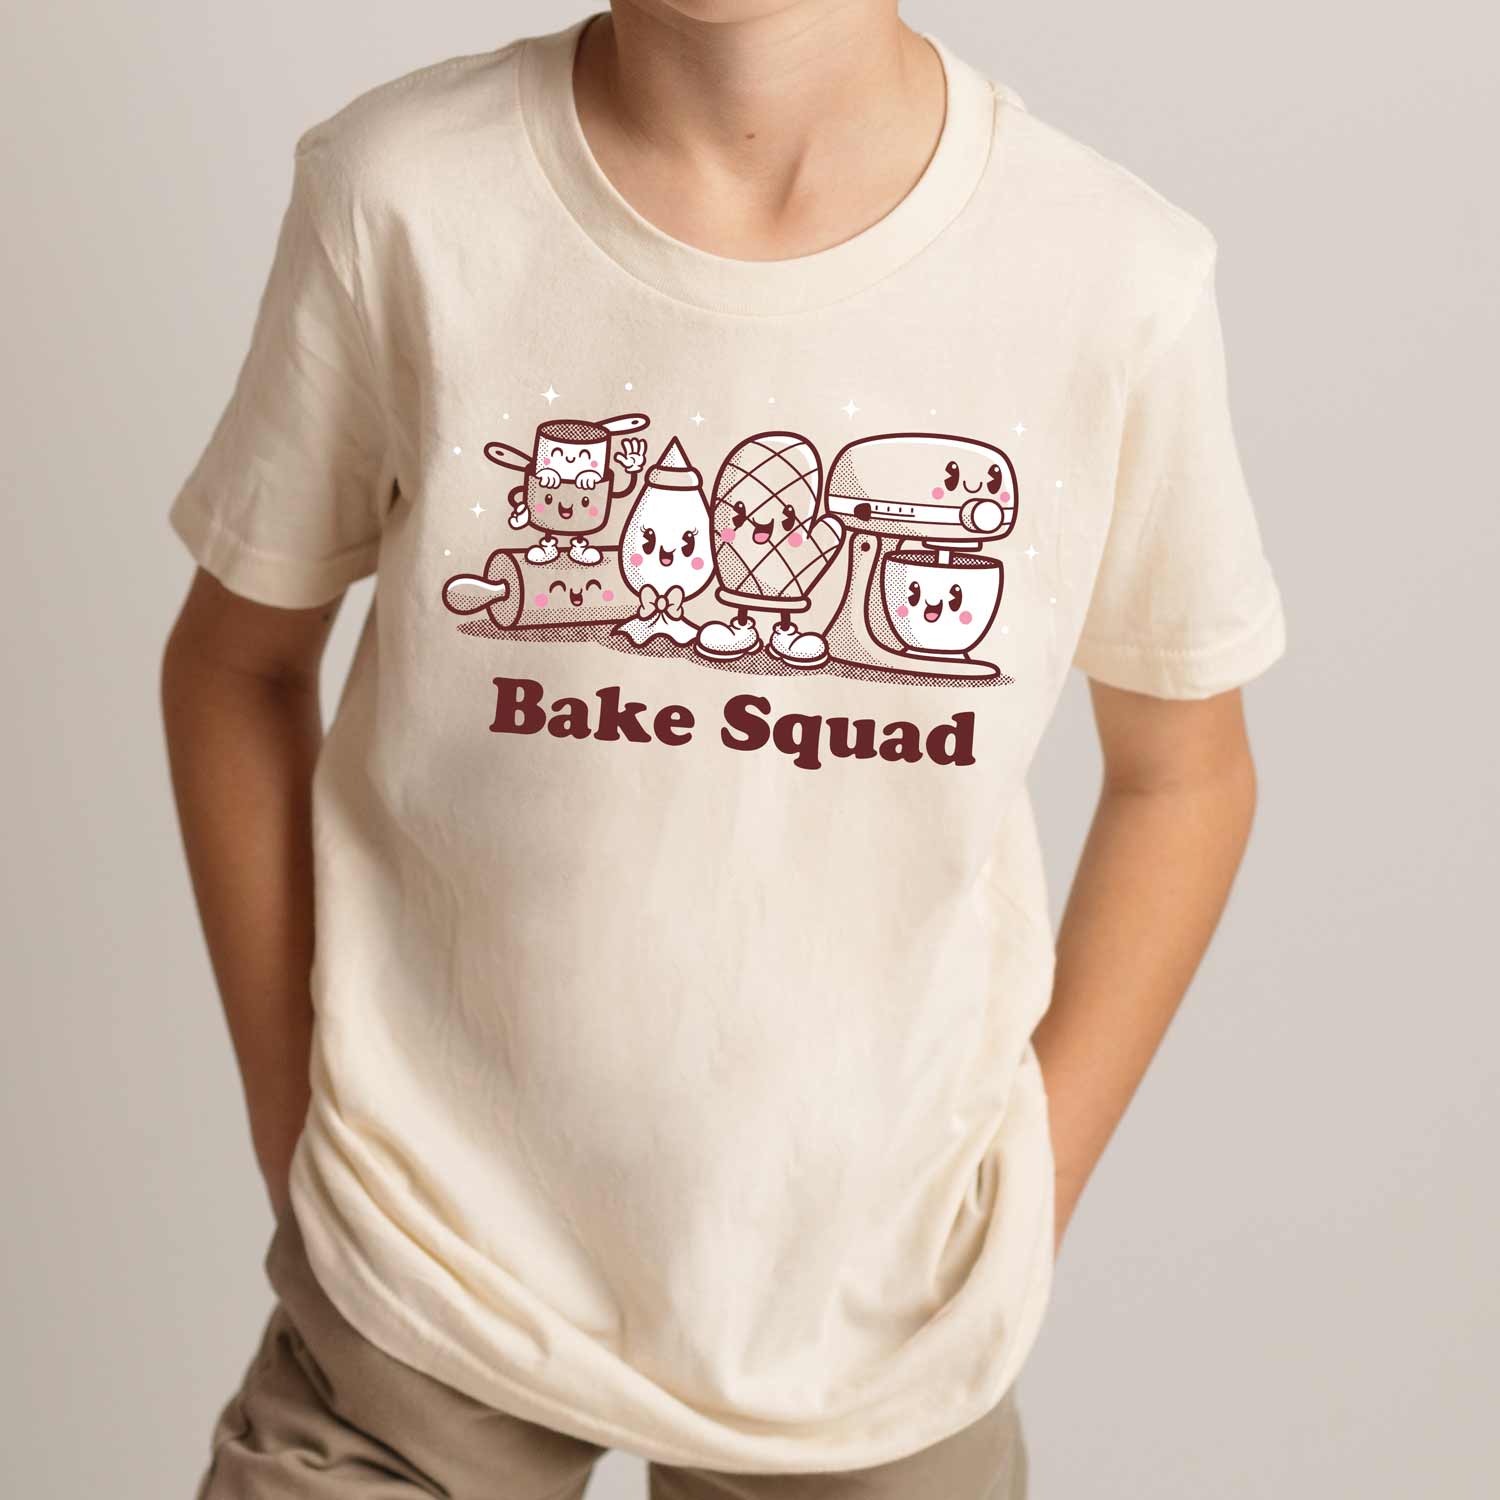 Bake Squad Youth T-Shirt